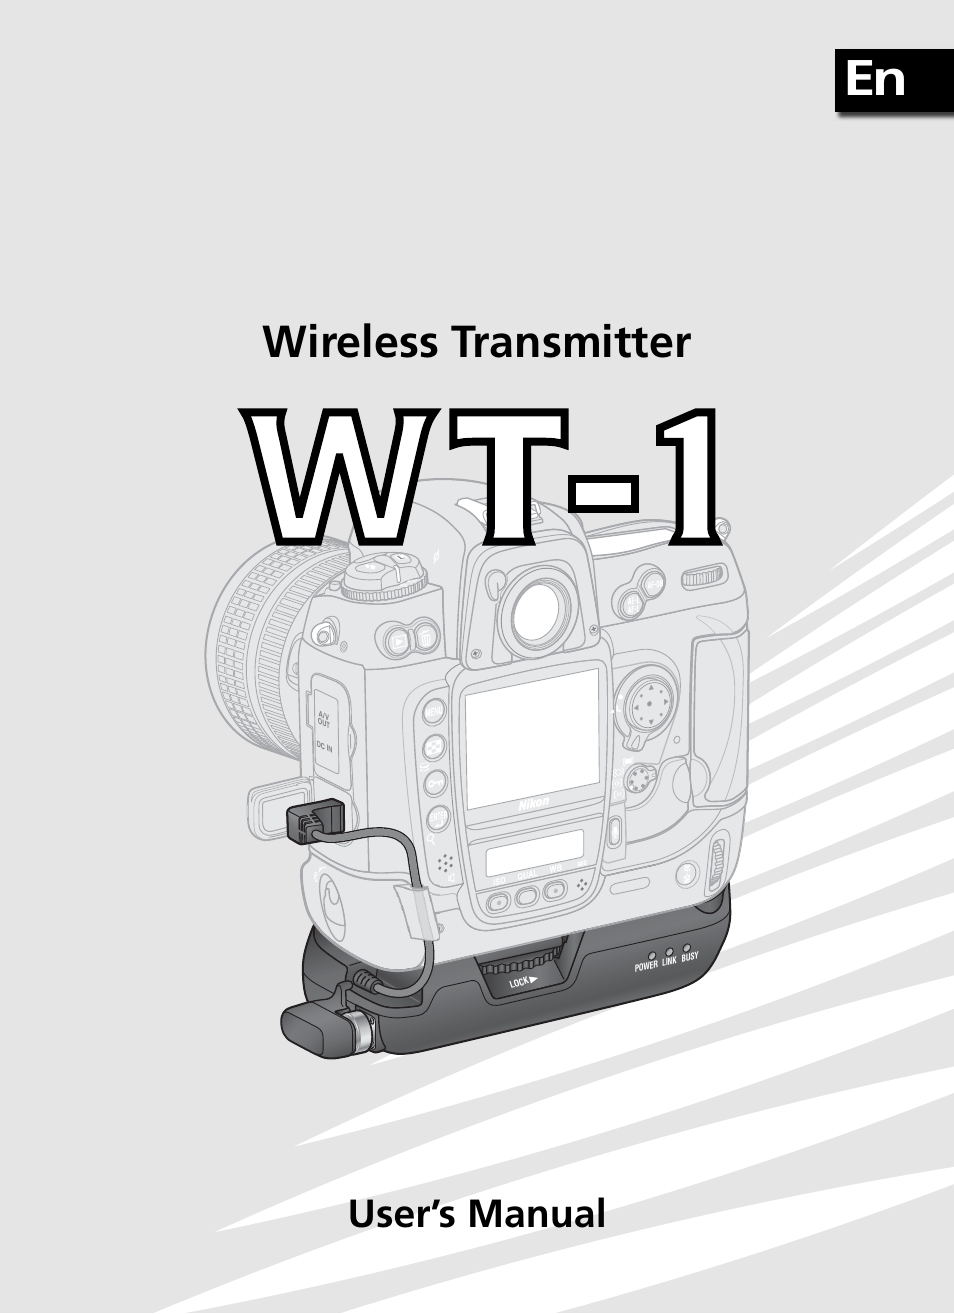 Wireless transmitter, User’s manual | Nikon WT-1 User Manual | Page 2 / 137